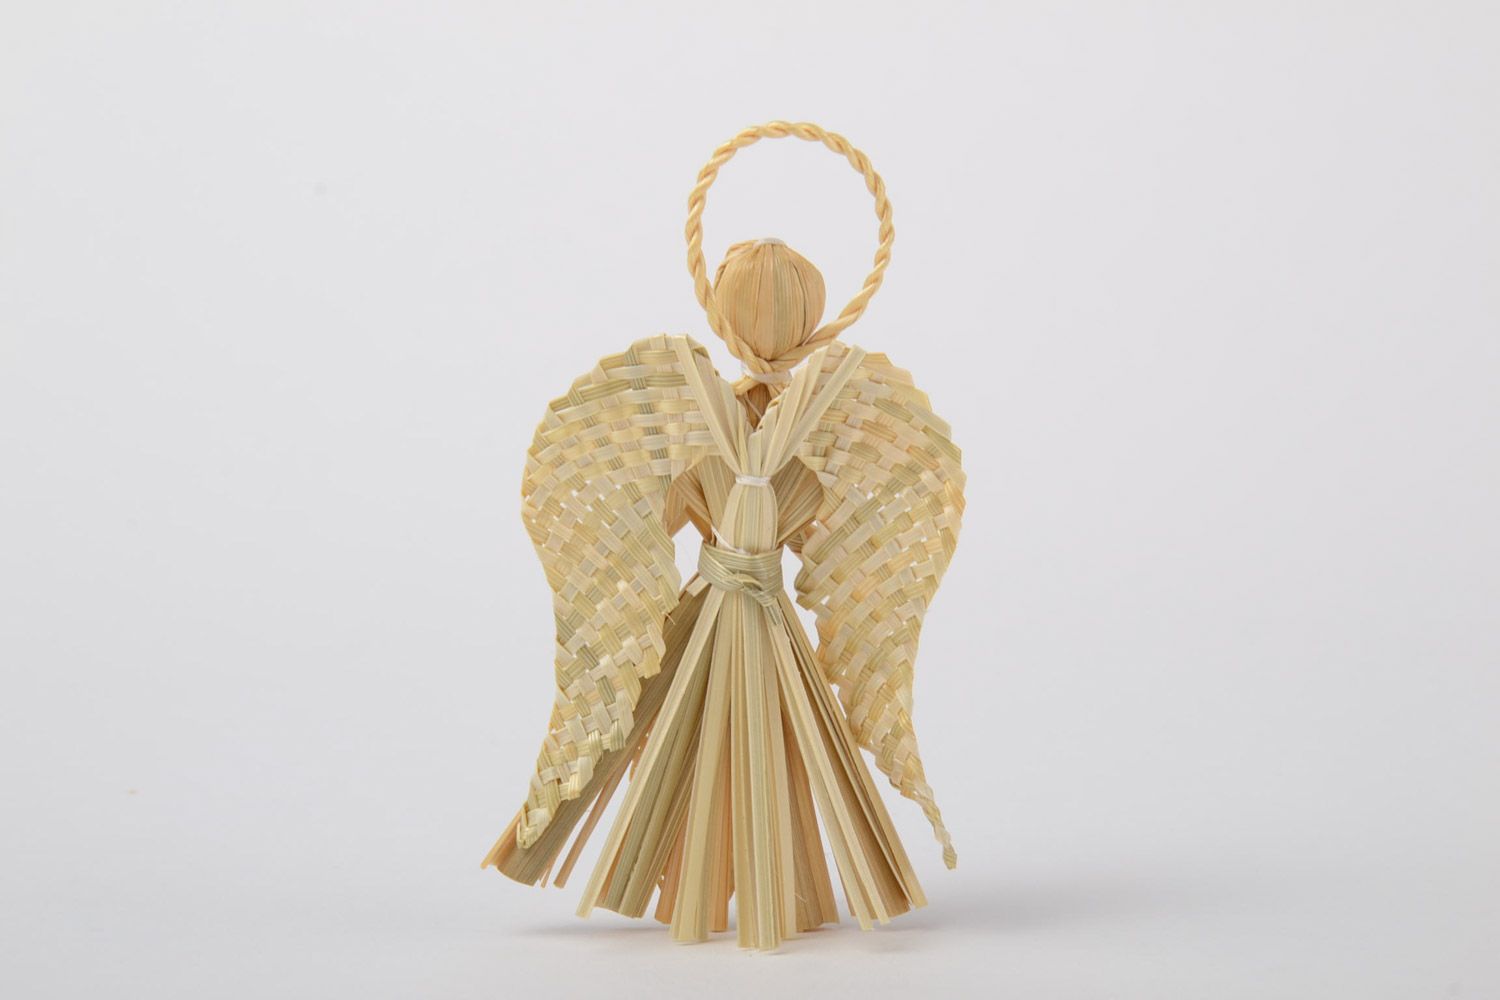 Ангел-хранитель из соломы плетеный вручную интерьерная подвеска в эко стиле фото 3